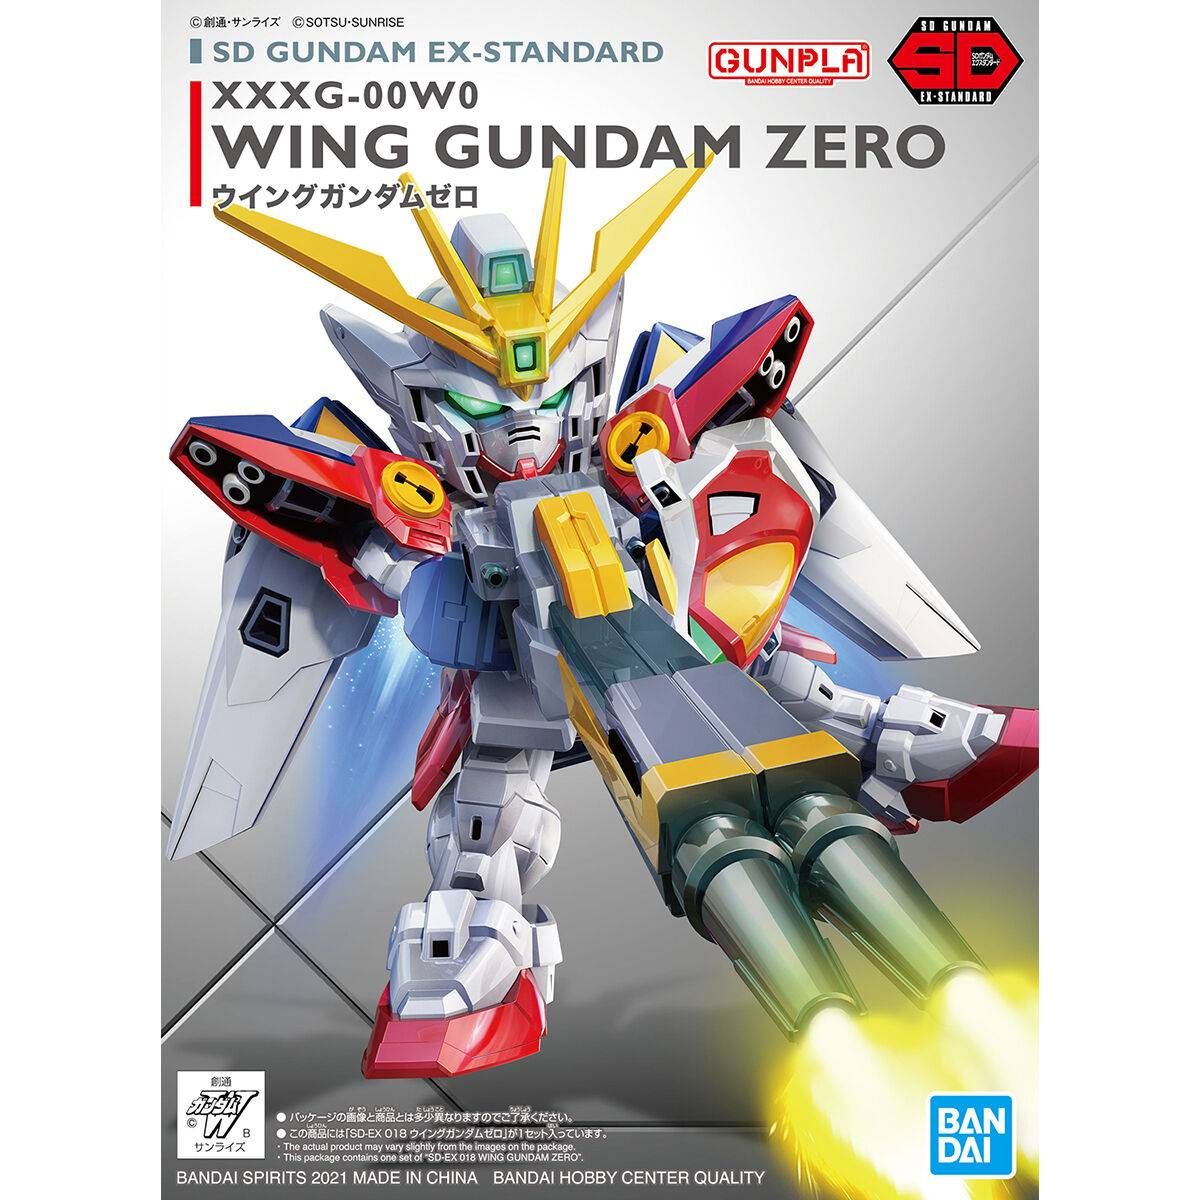 SD Ex-Std: XXXG-00W0 Wing Gundam Zero